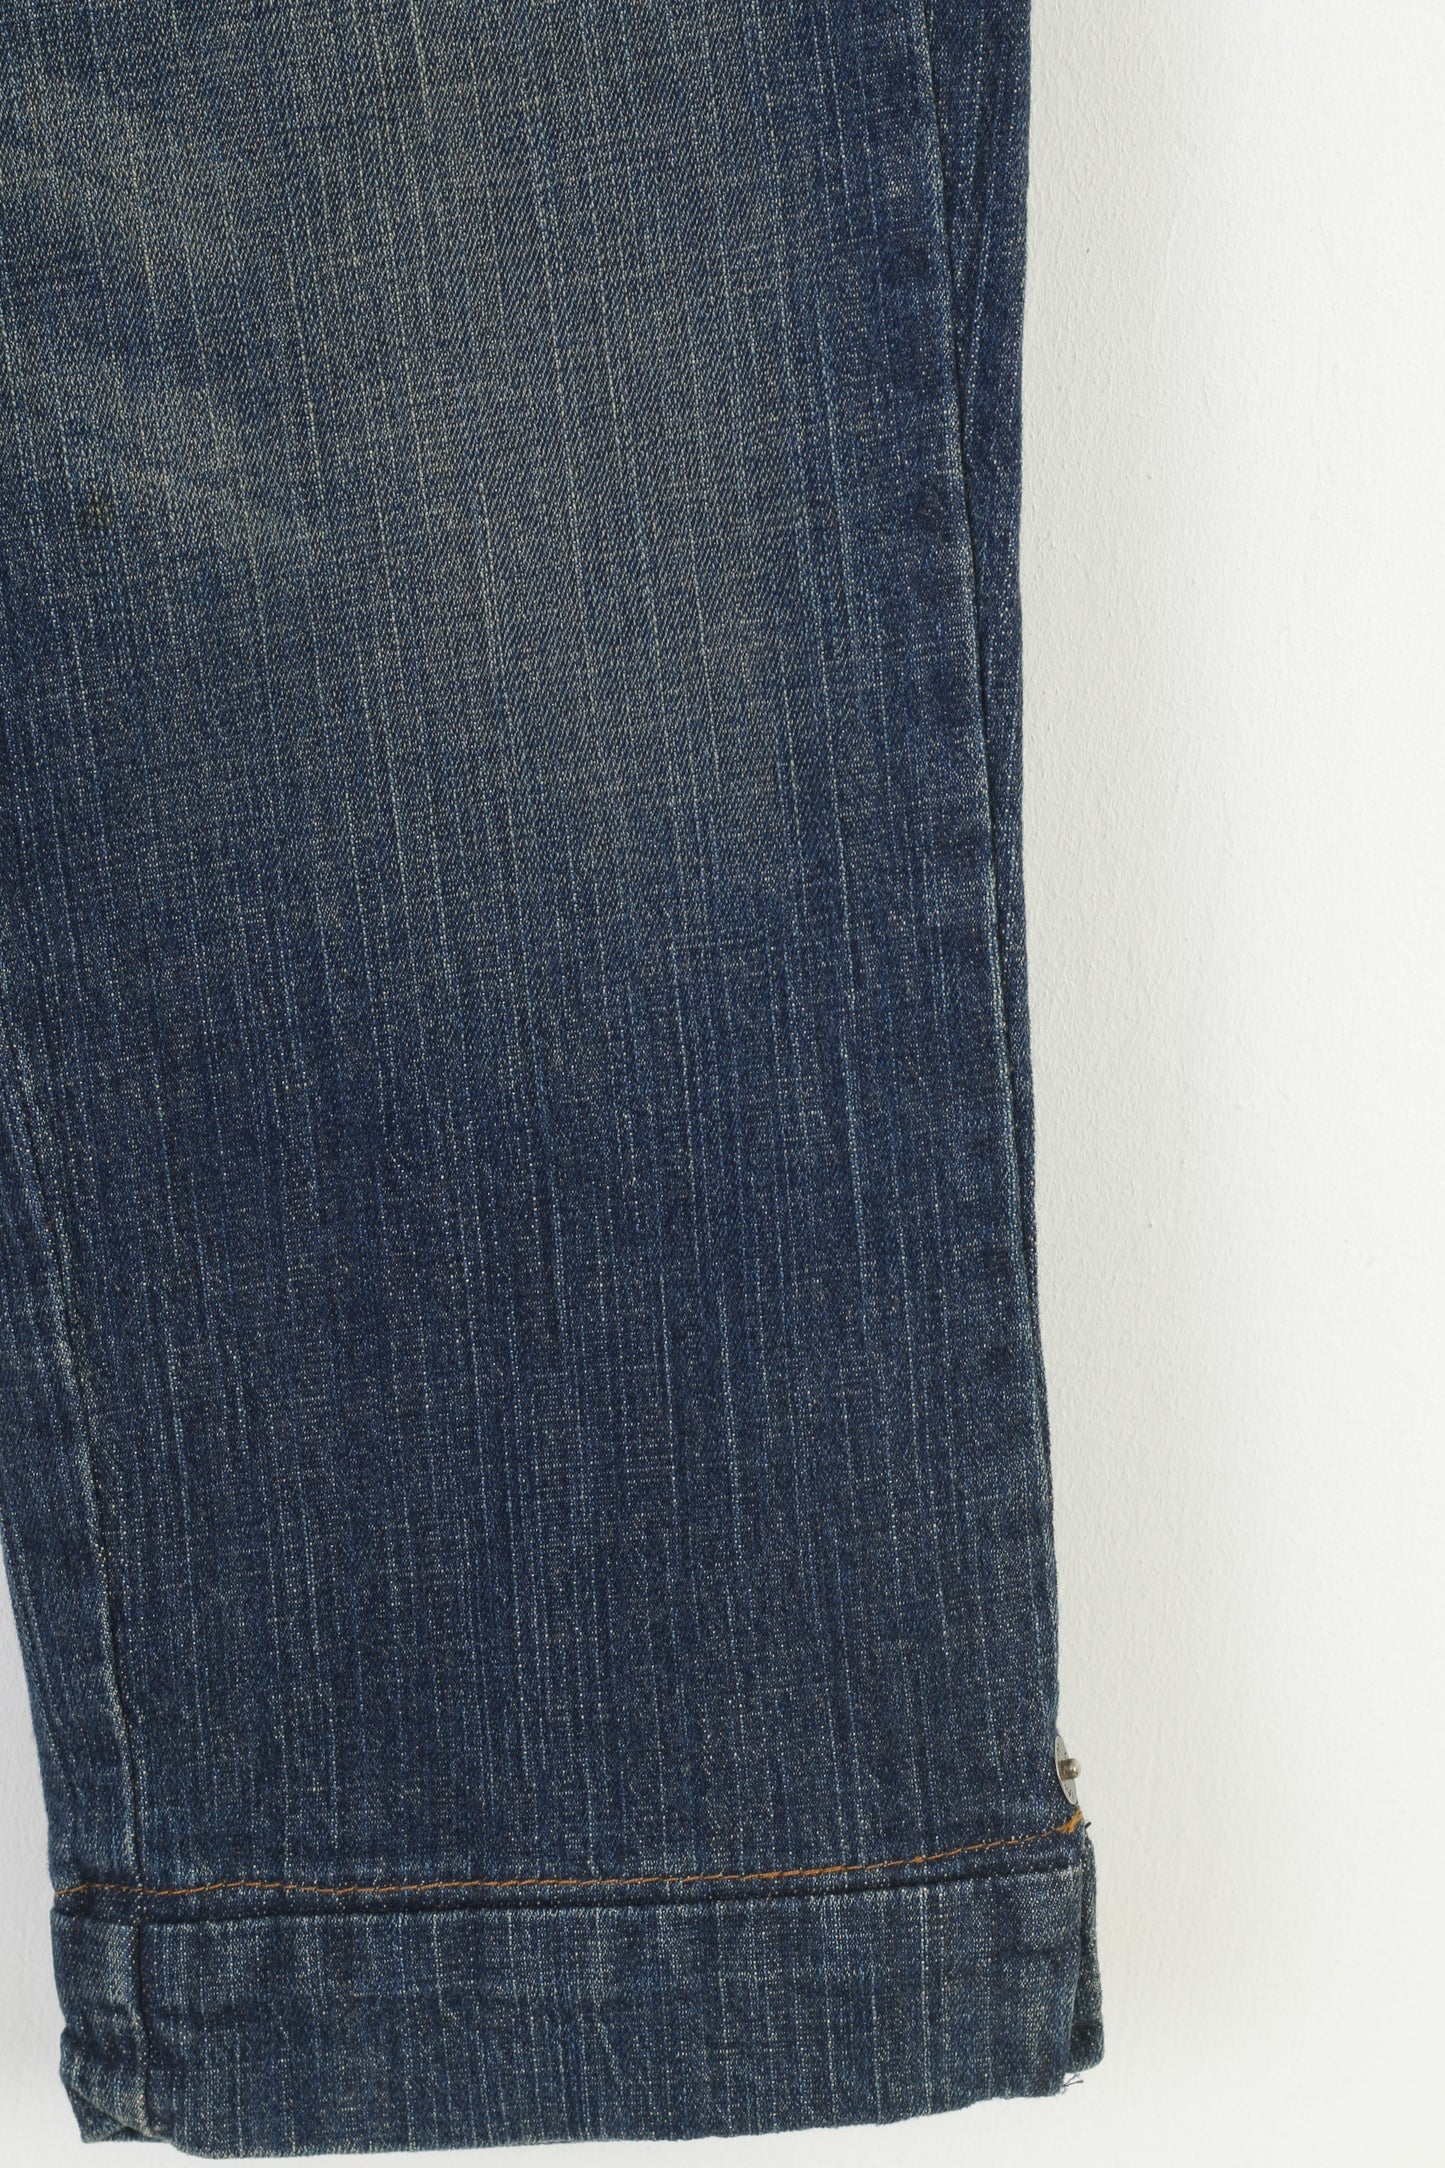 Lee Women 3 M Trousers Capri Navy Jeans Denim Cotton Vintage Pants